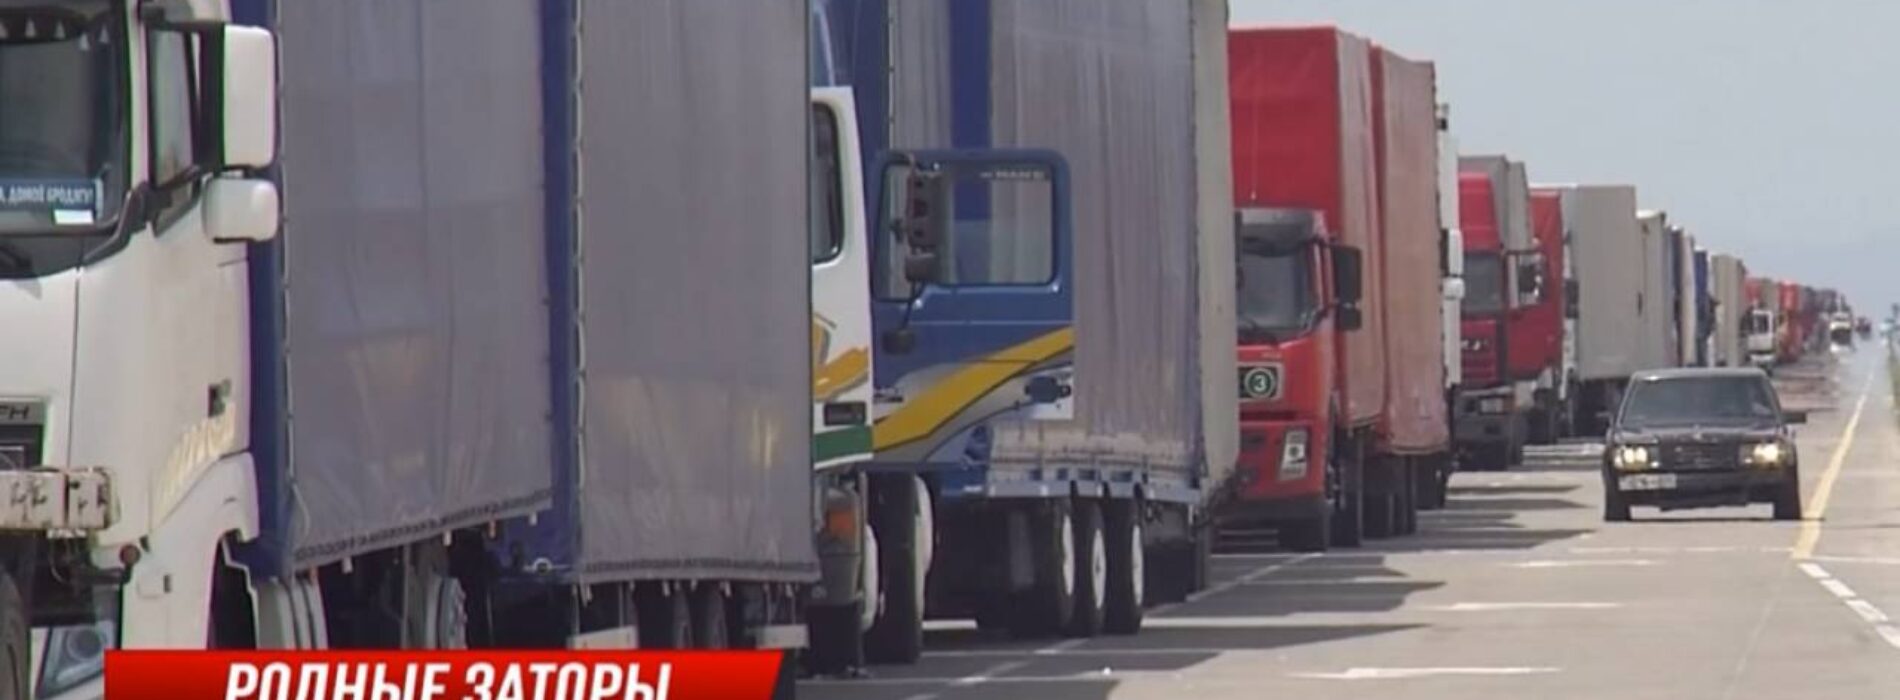 Дальнобойщики требуют ускорить проезд на казахско-китайской границе